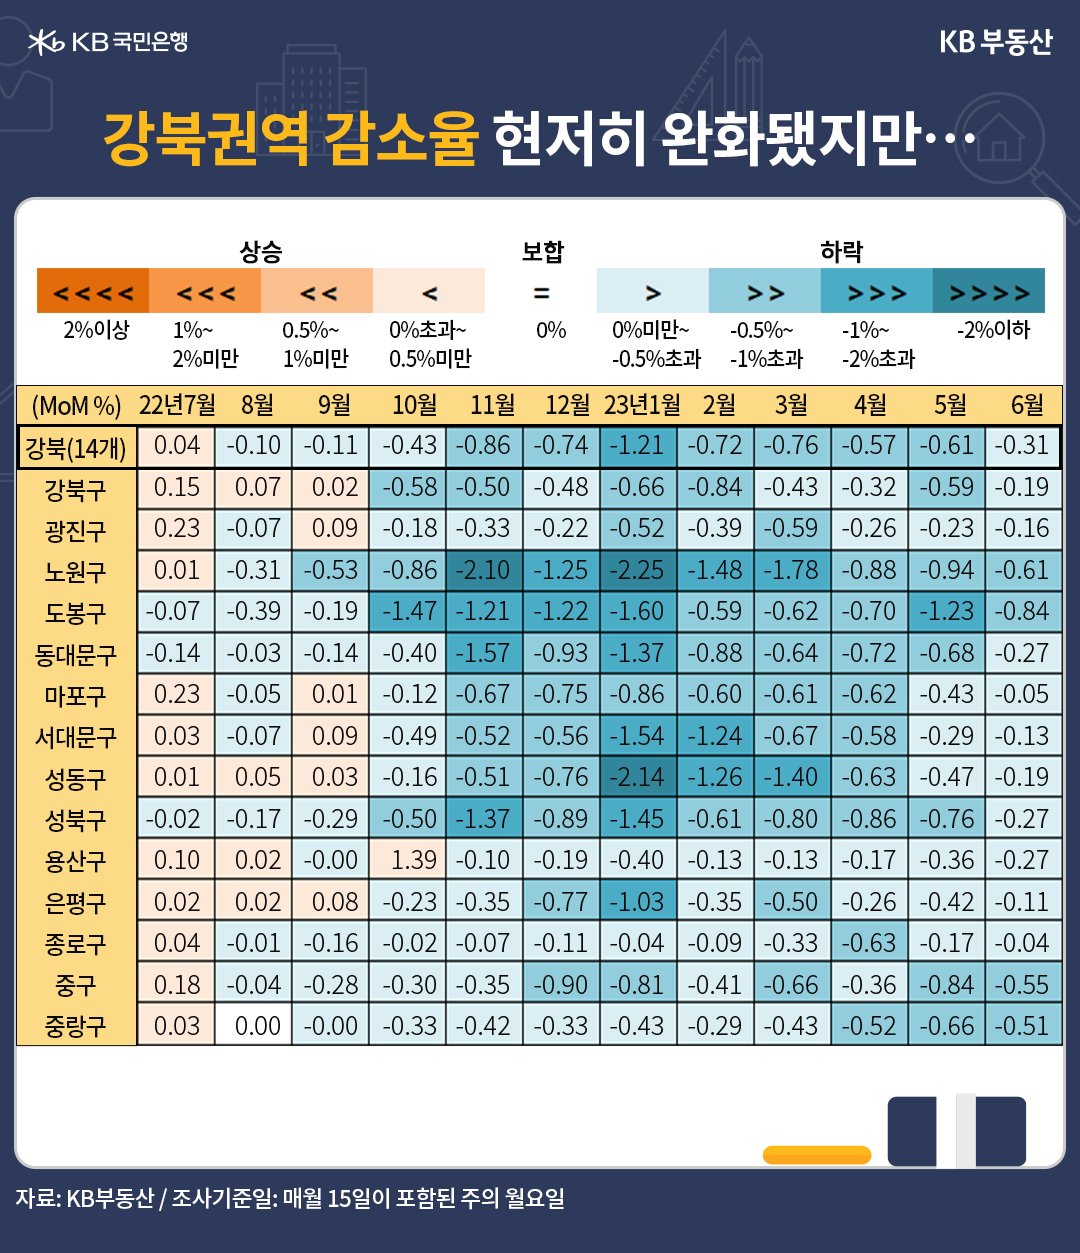 6월 서울 매매가격 전월 대비 하락률은 -0.18%입니다. 강북 -0.31%, 강남 -0.05%로 하락률이 각각 0.30%p, 0.36%p 줄었습니다. 강북권 평균보다 더 하락한 지역은 도봉구>노원구>중구>중랑구입니다. 노원ㆍ도봉구는 강북권역에서 갭투자가 많았던 지역이고, 매물이 적어 상대적으로 하락률이 적었던 중랑ㆍ중구는 뒤늦게 급매물 영향을 받았습니다.